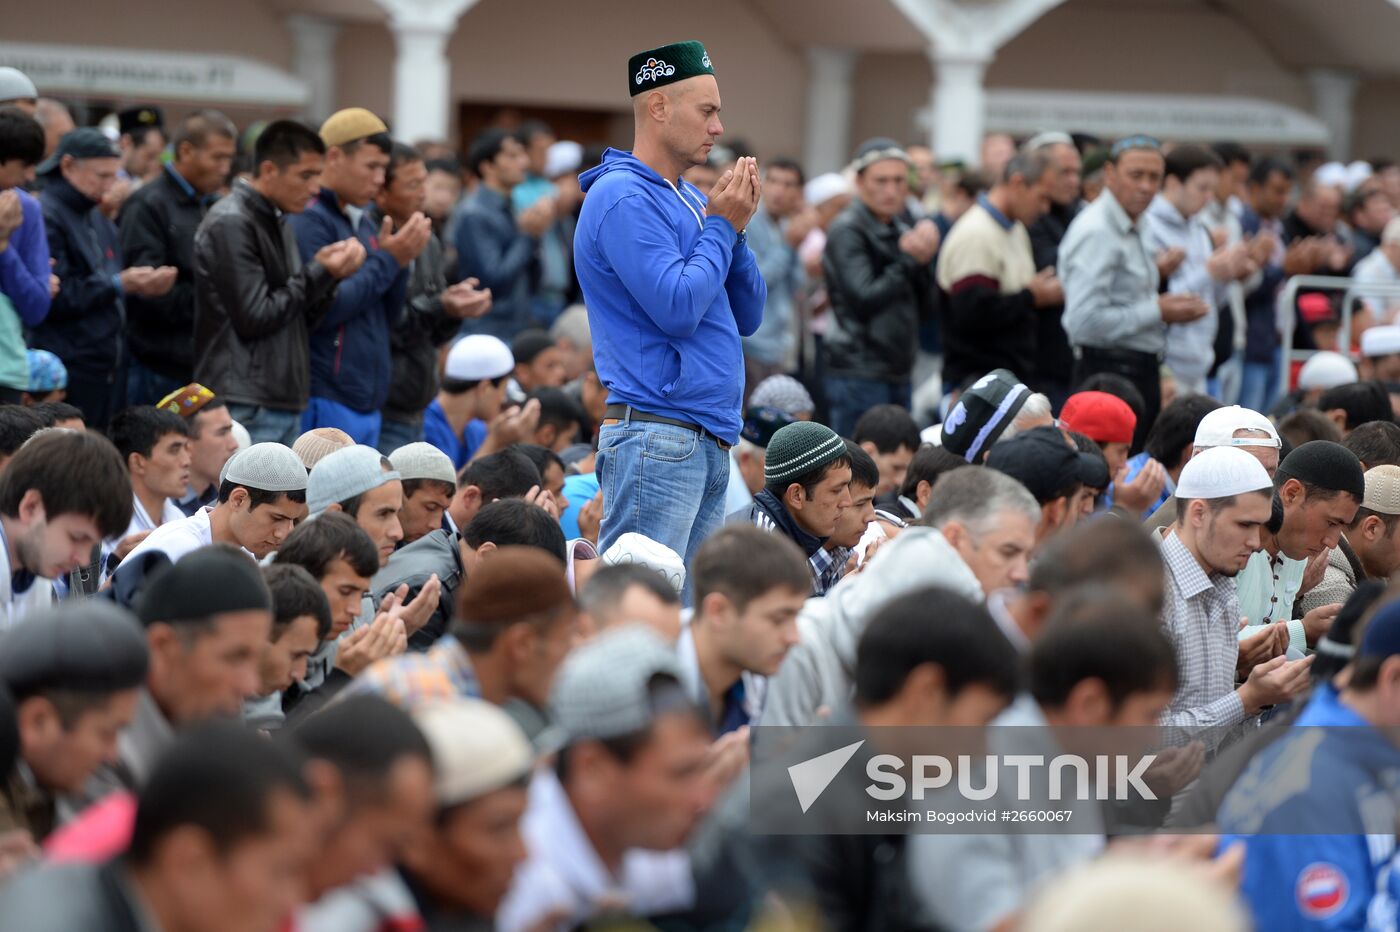 Muslims celebrate Eid al-Fitr in Russian regions